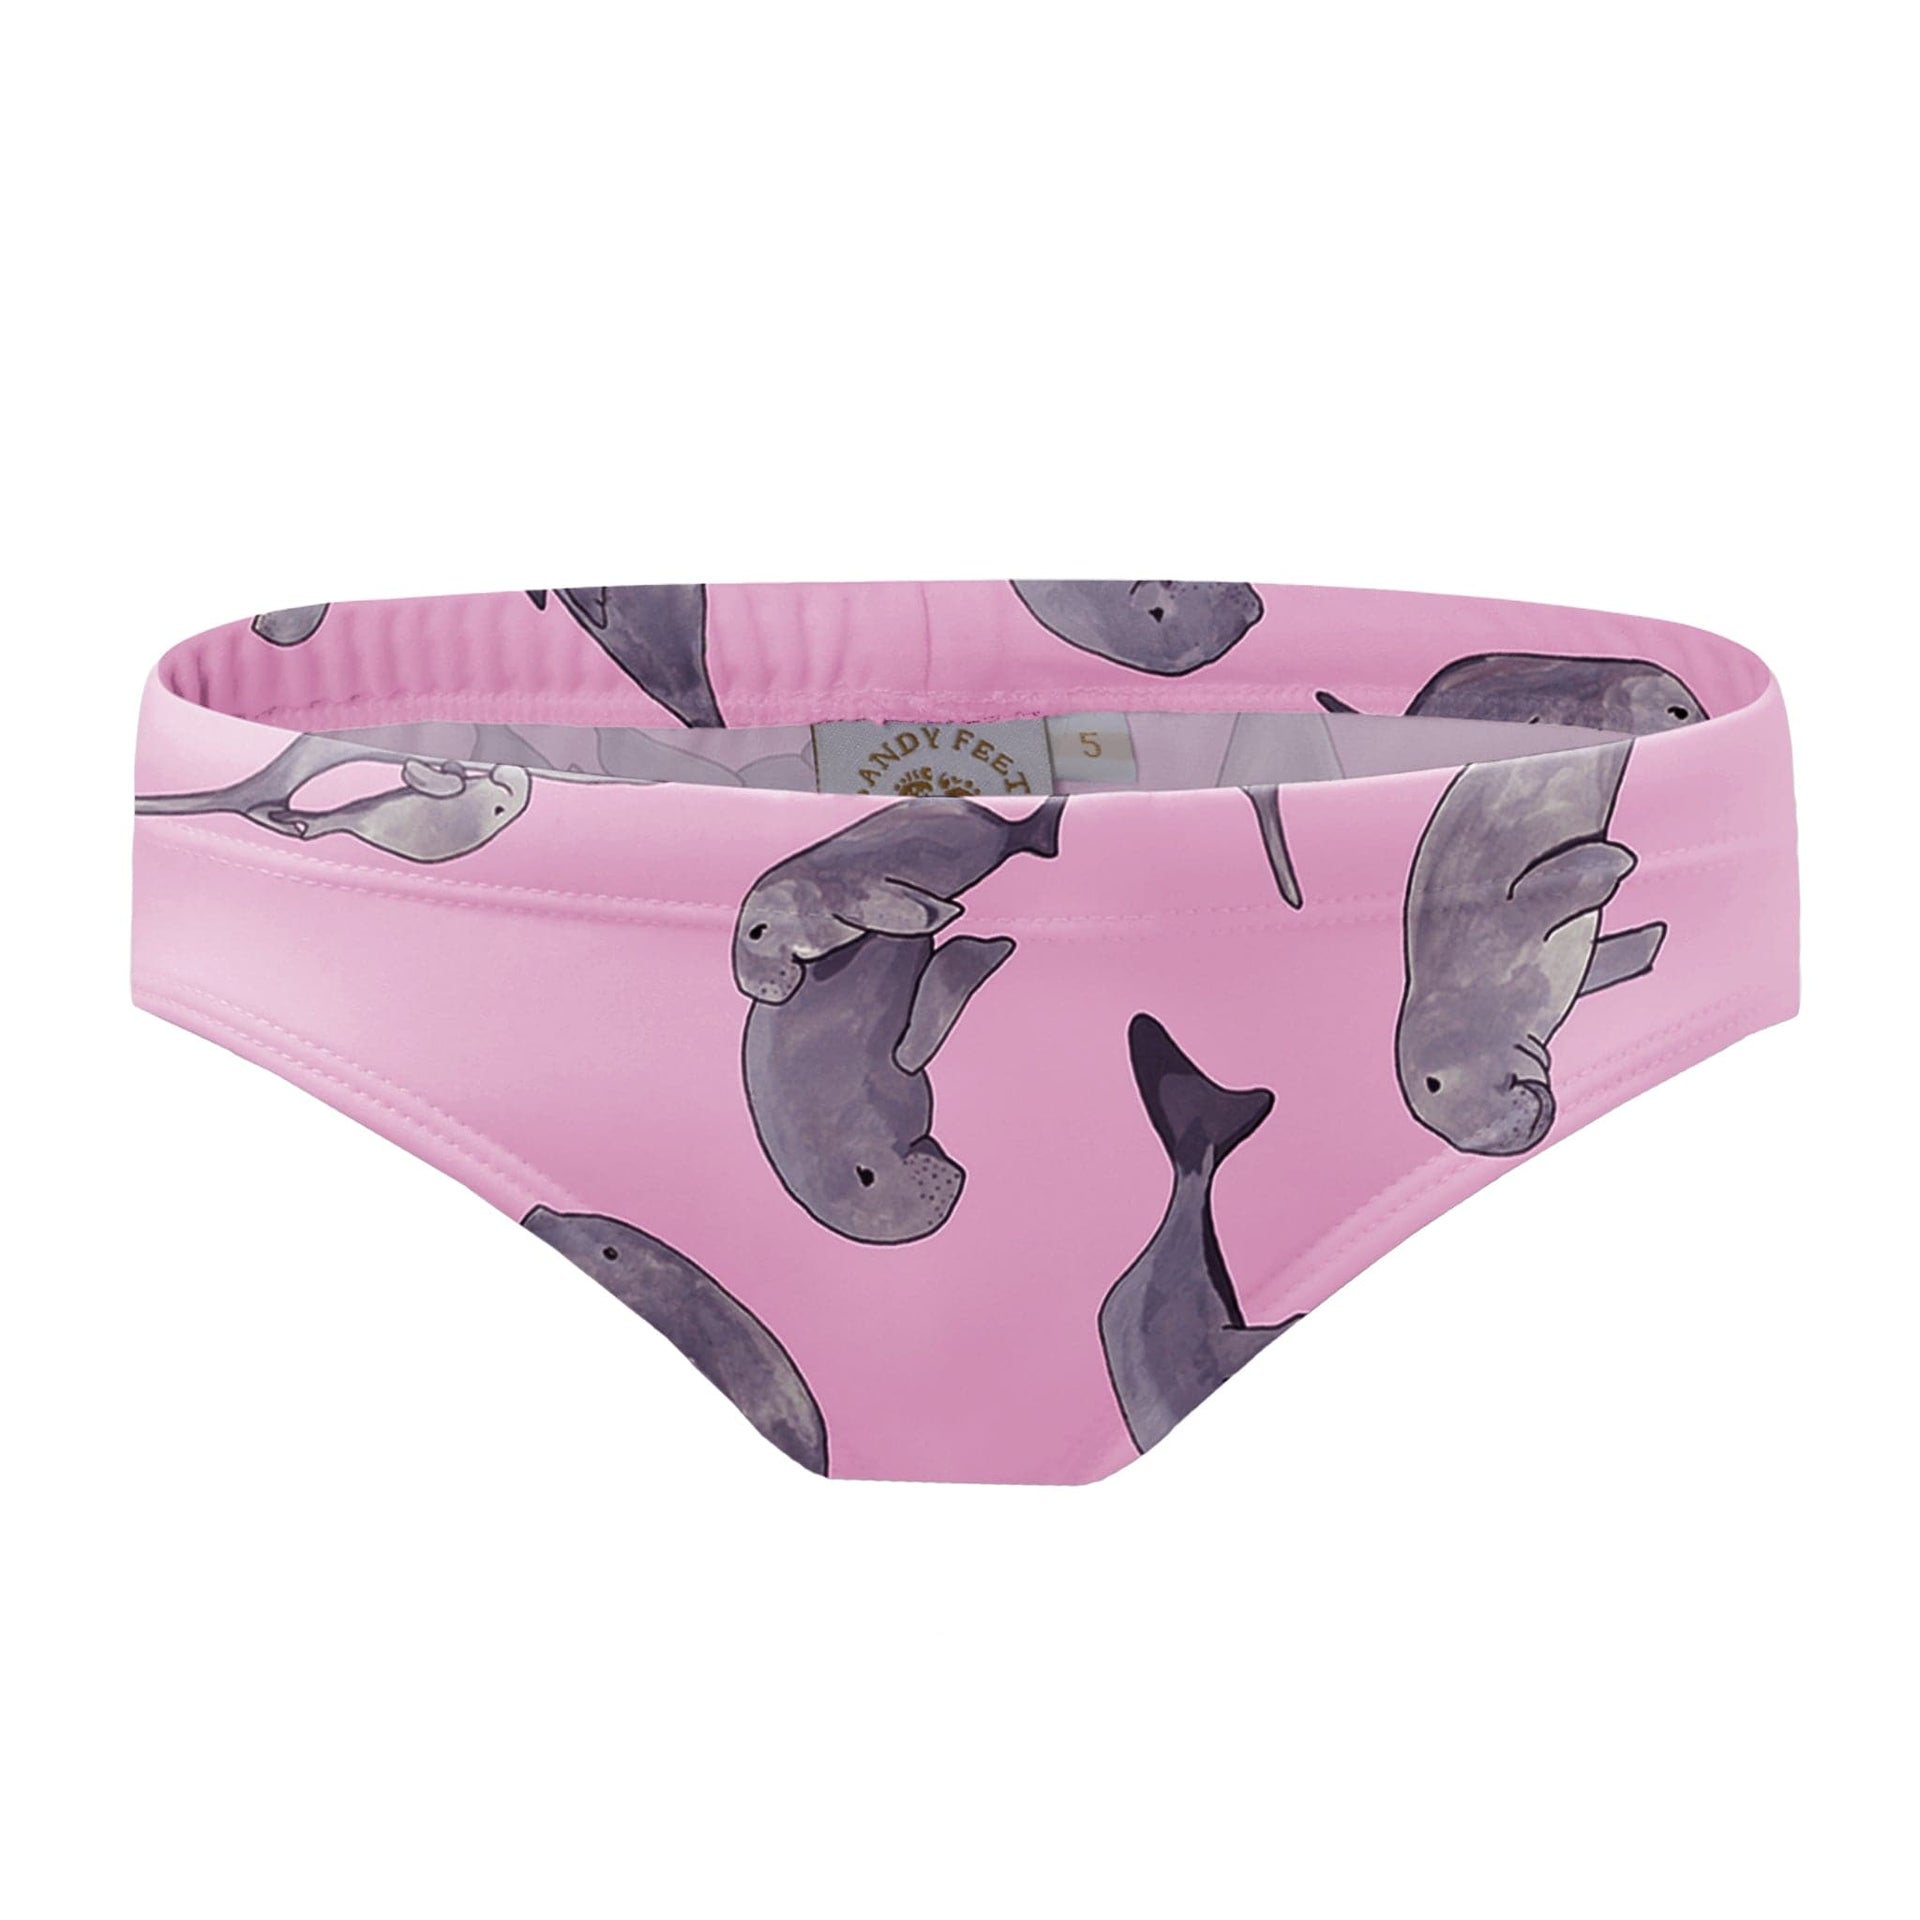 Sandy Feet Australia Bikini Bottoms Pink Dugong Bikini Bottoms